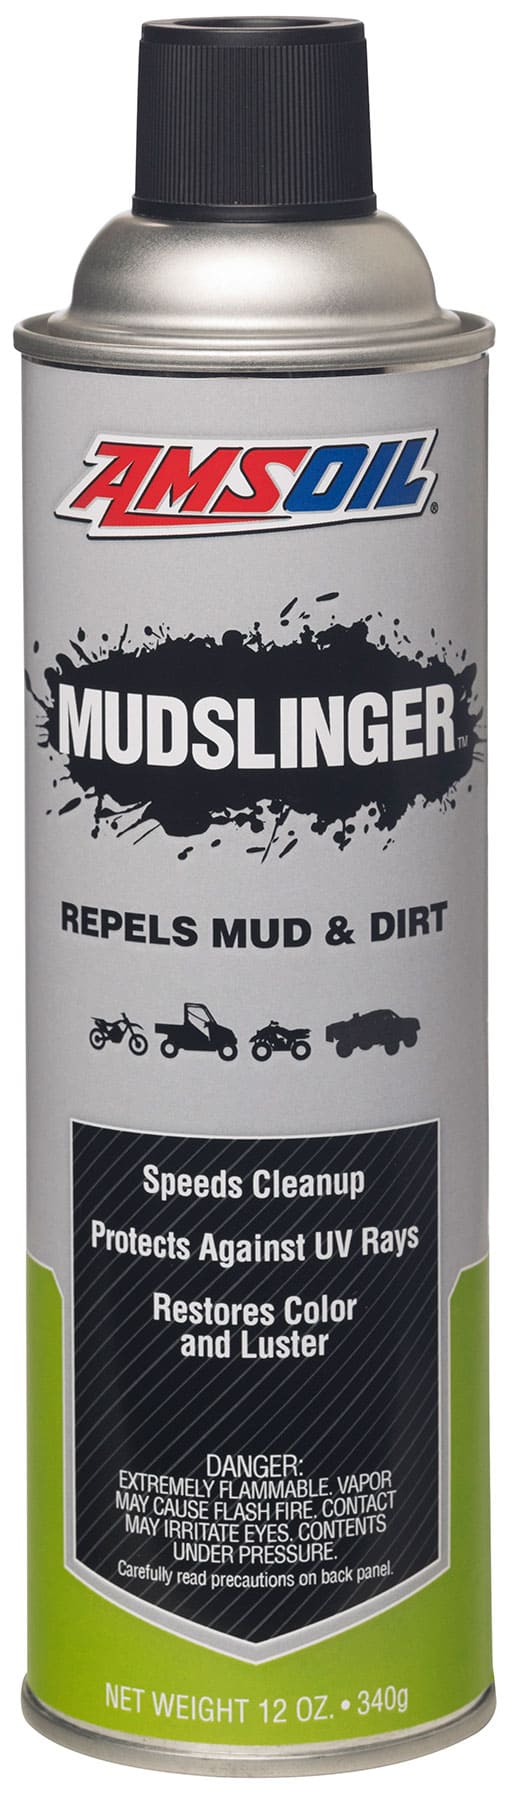 Mudslinger™